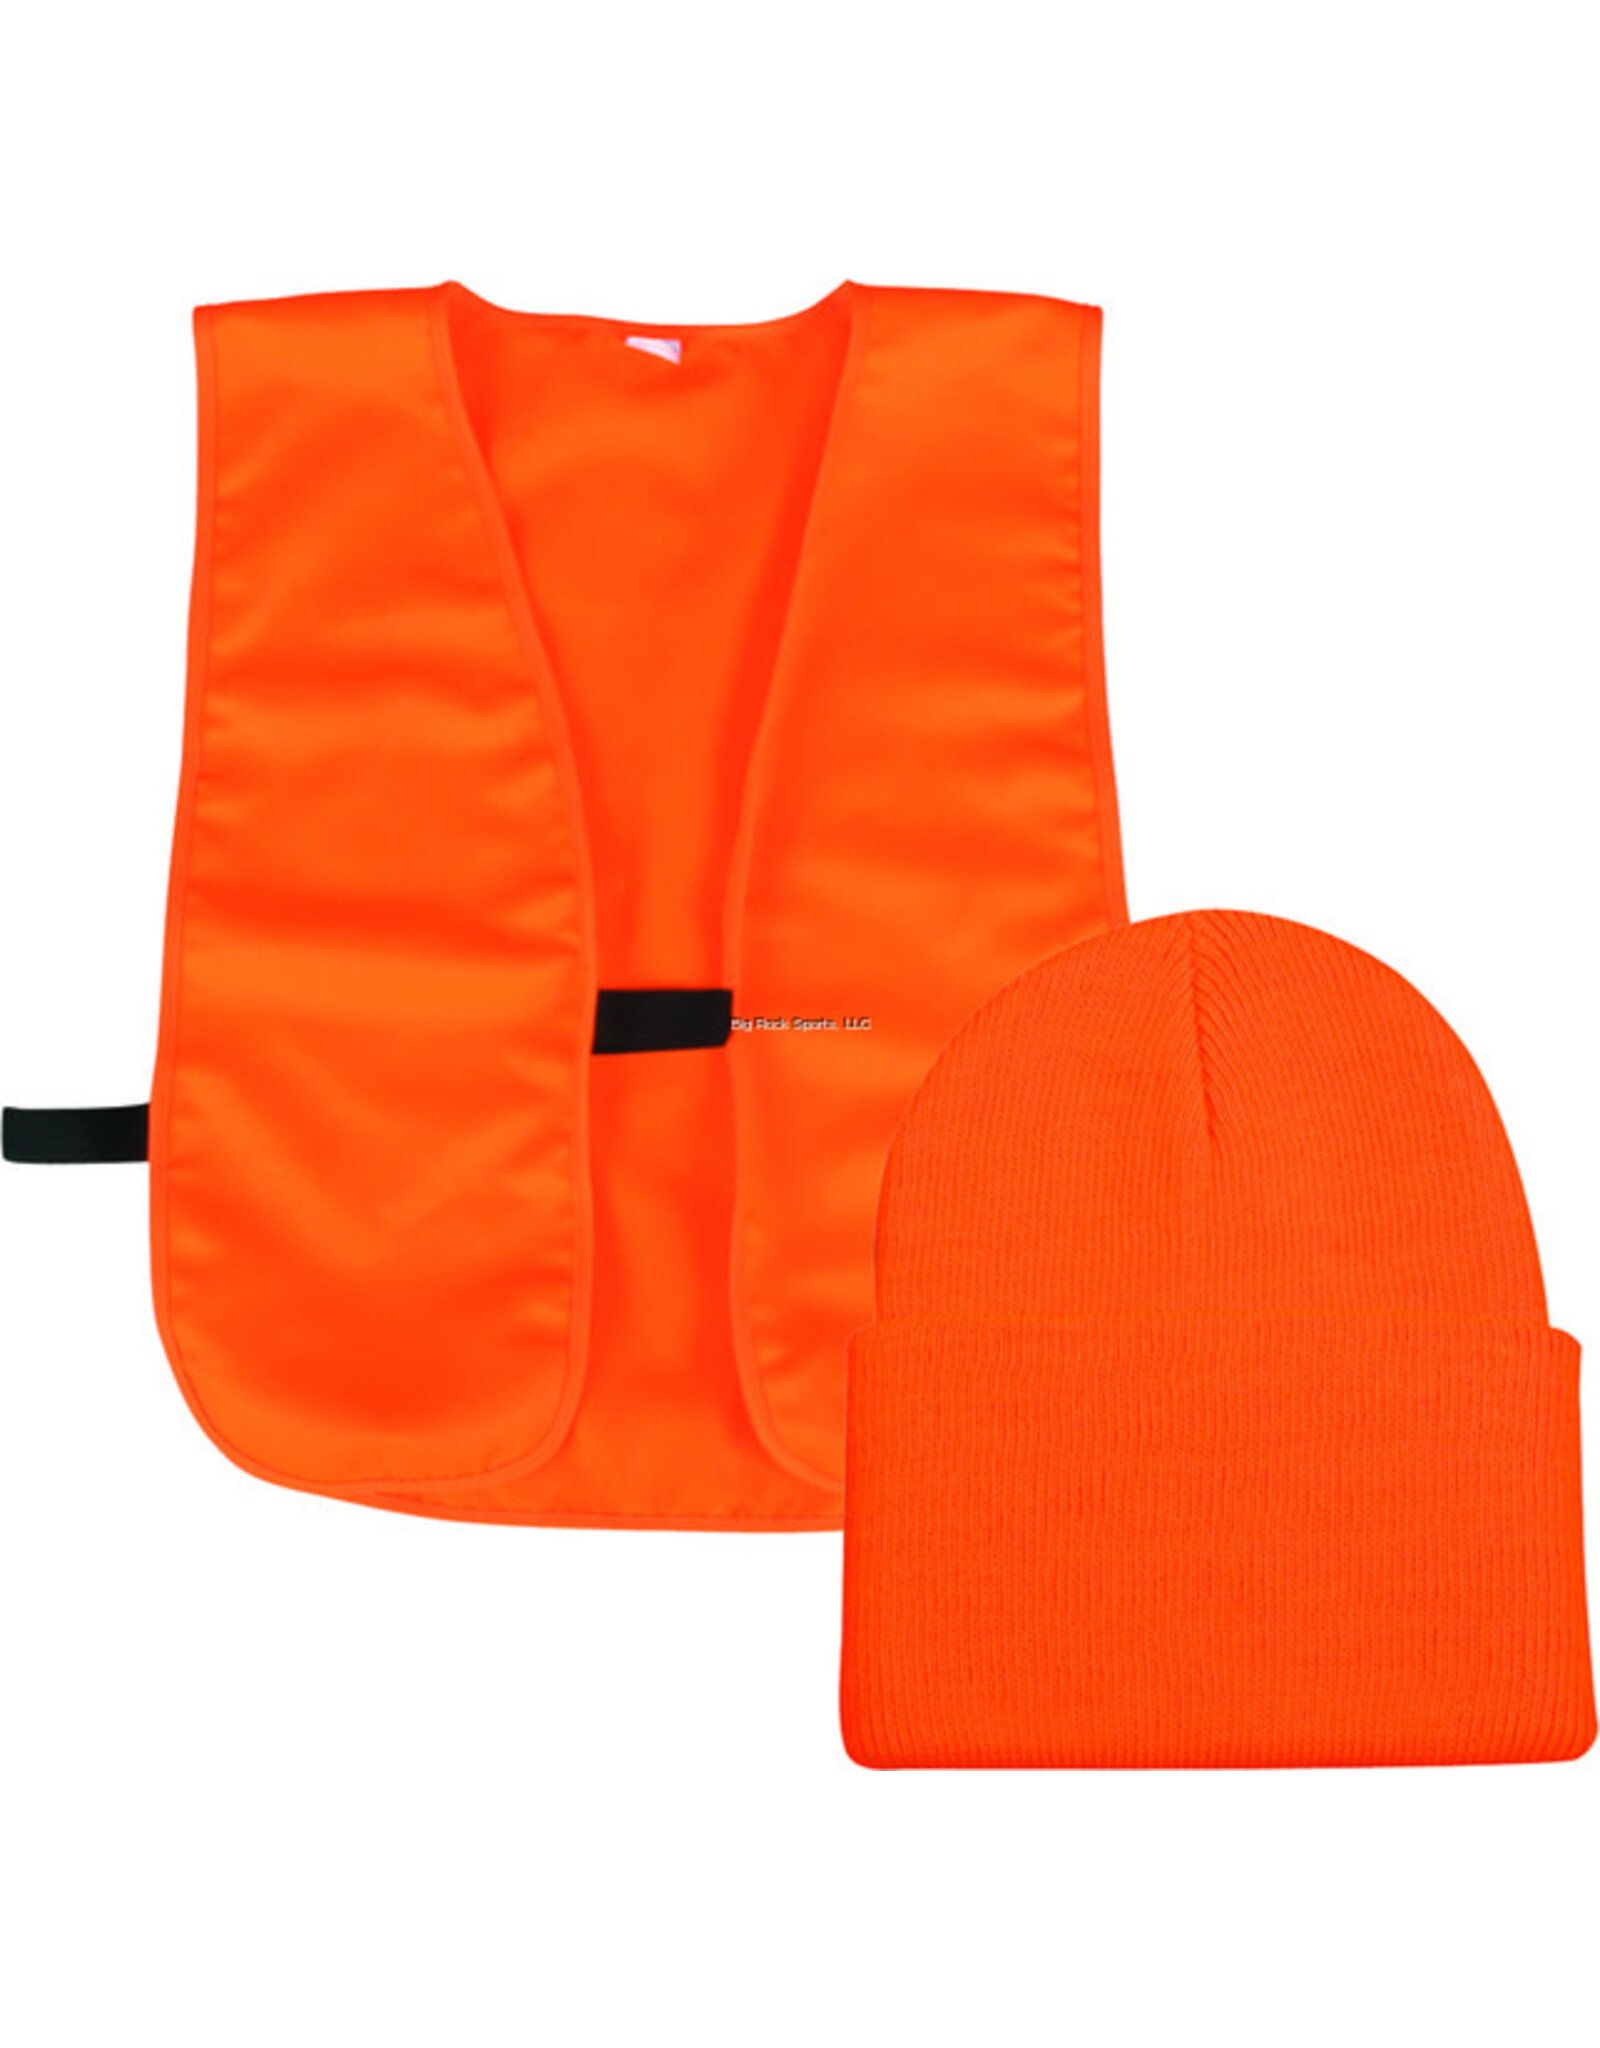 OUTDOOR CAP Outdoor Cap BLZKVST Blaze Orange Vest w/Knit Cap